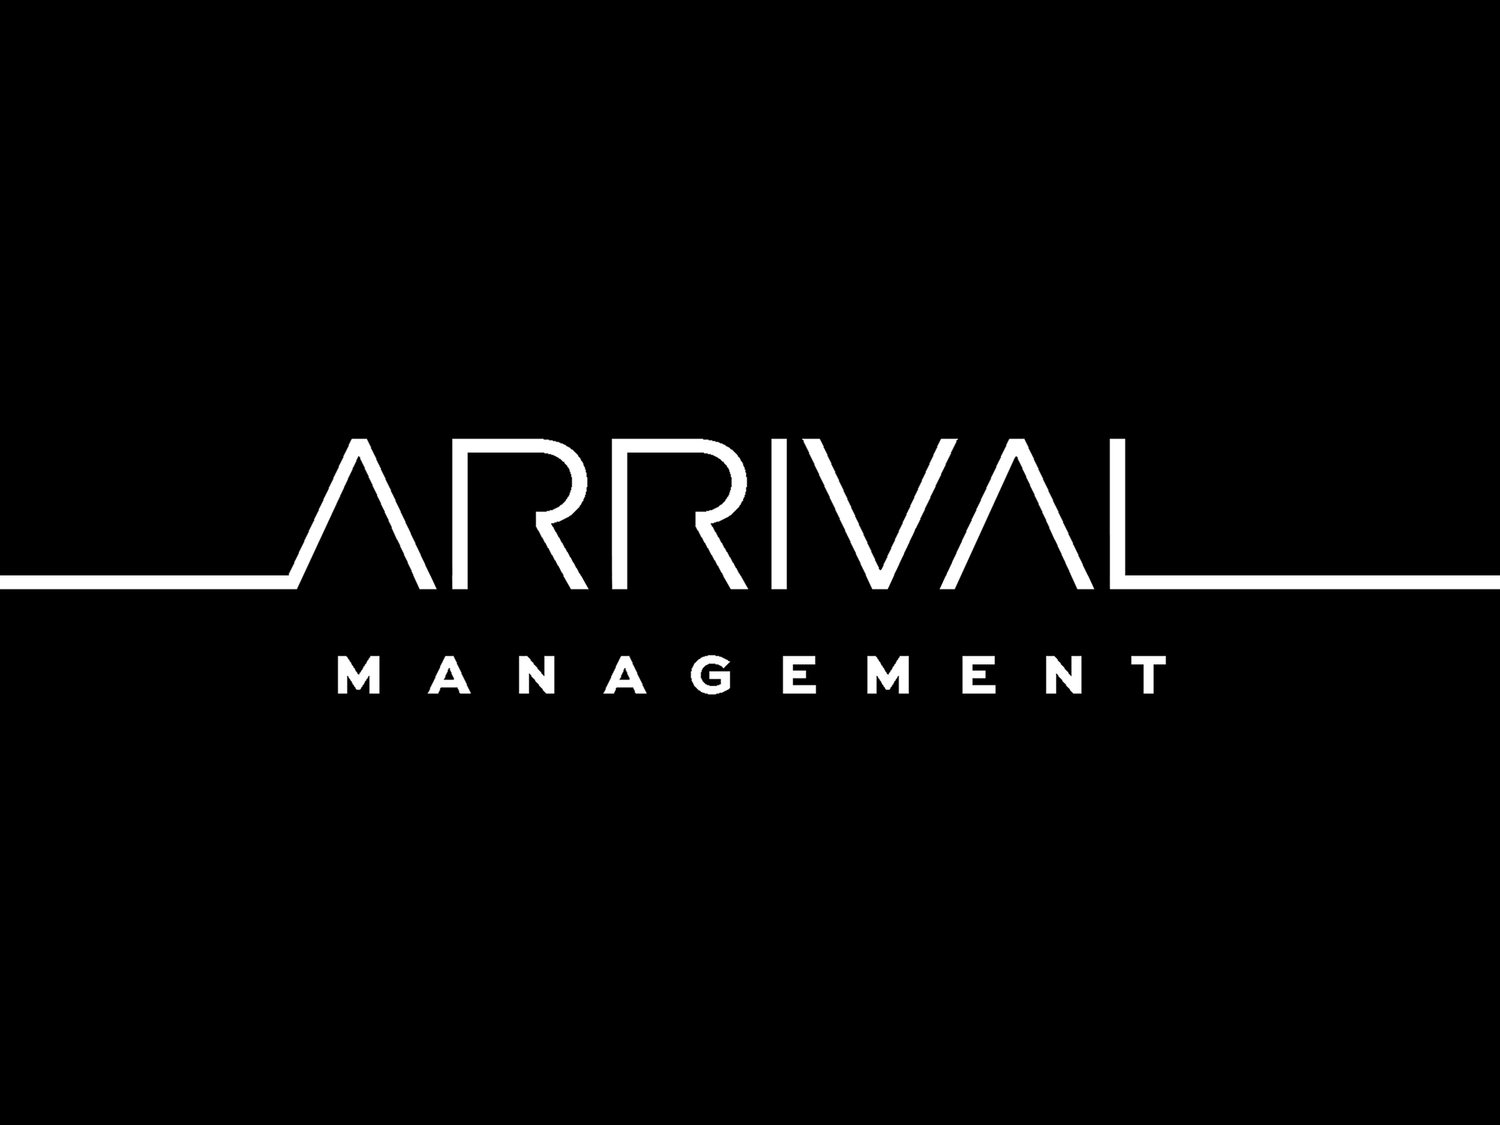 ARRIVAL Management